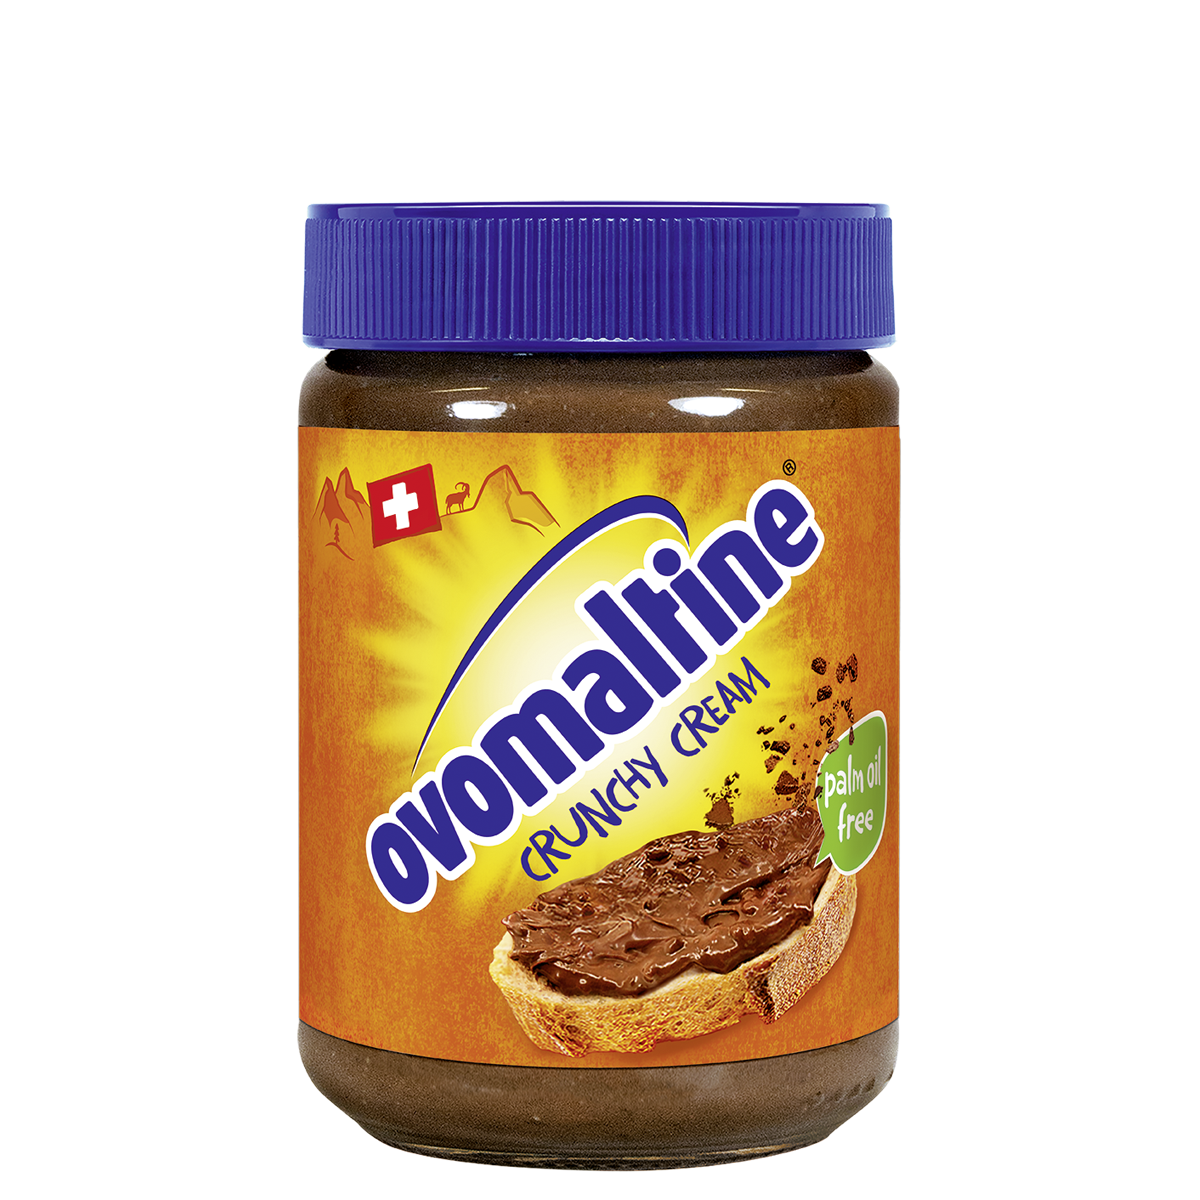 Ovomaltine Crunchy Cream